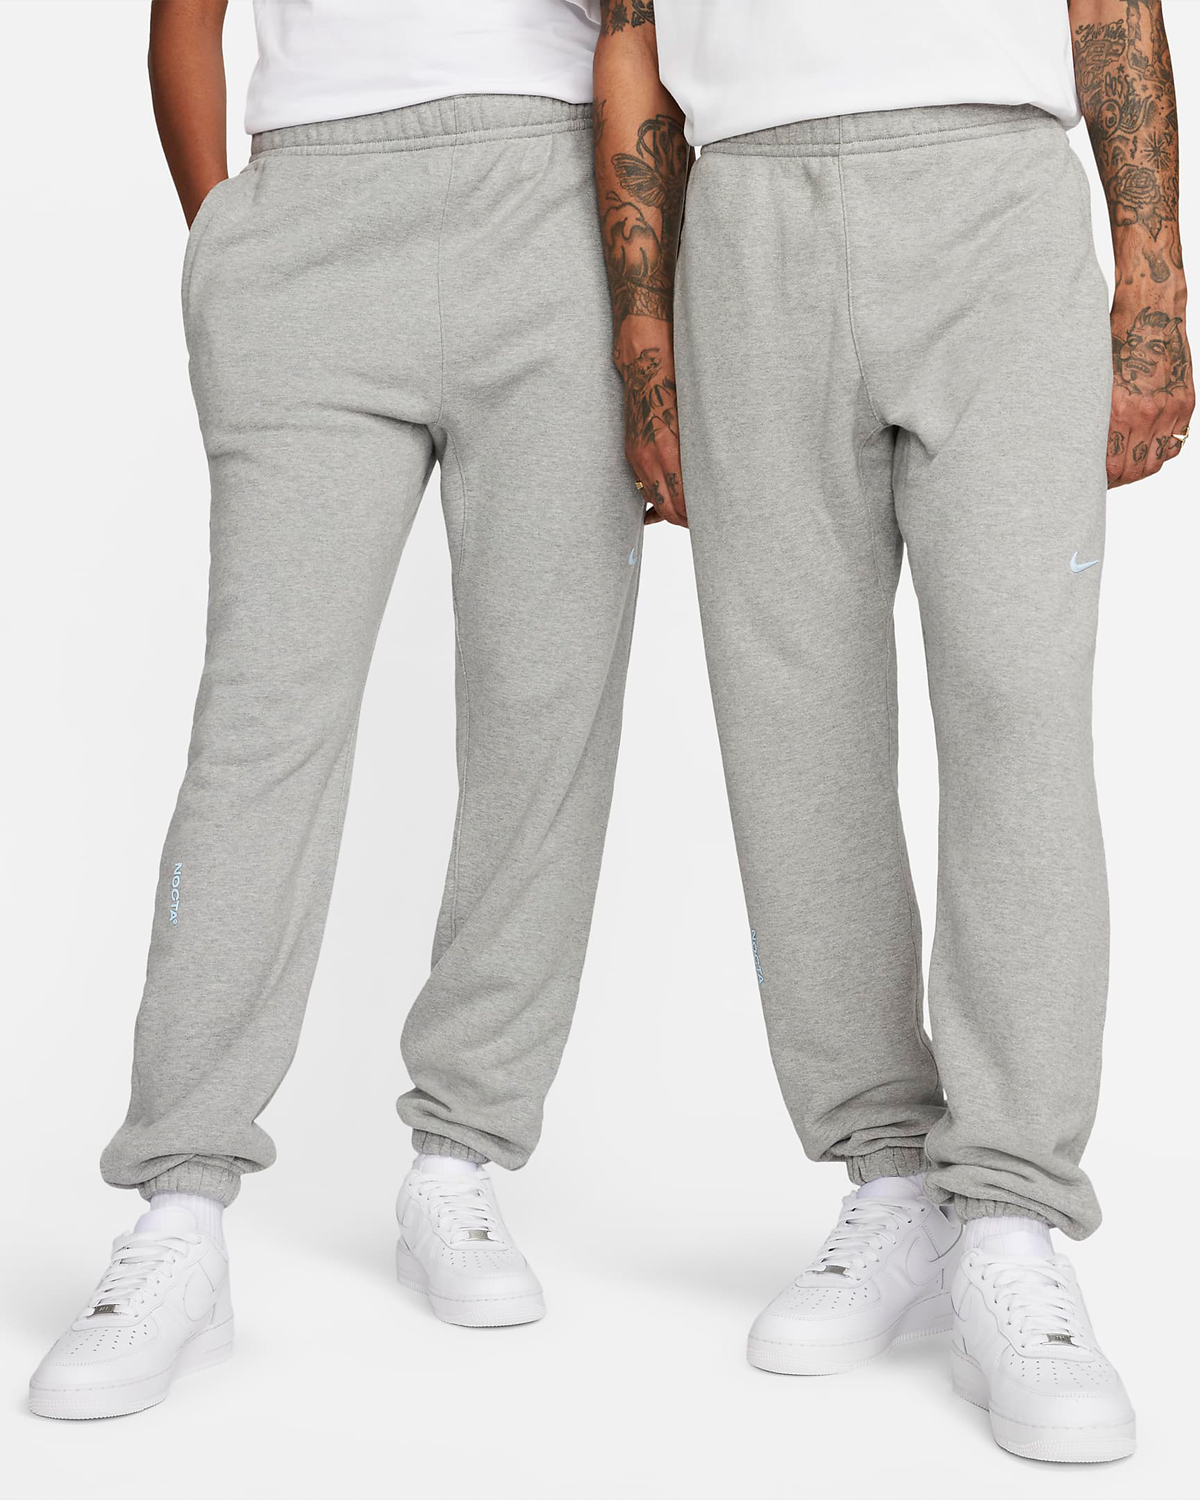 Drake-NOCTA-Nike-Pants-Grey-1